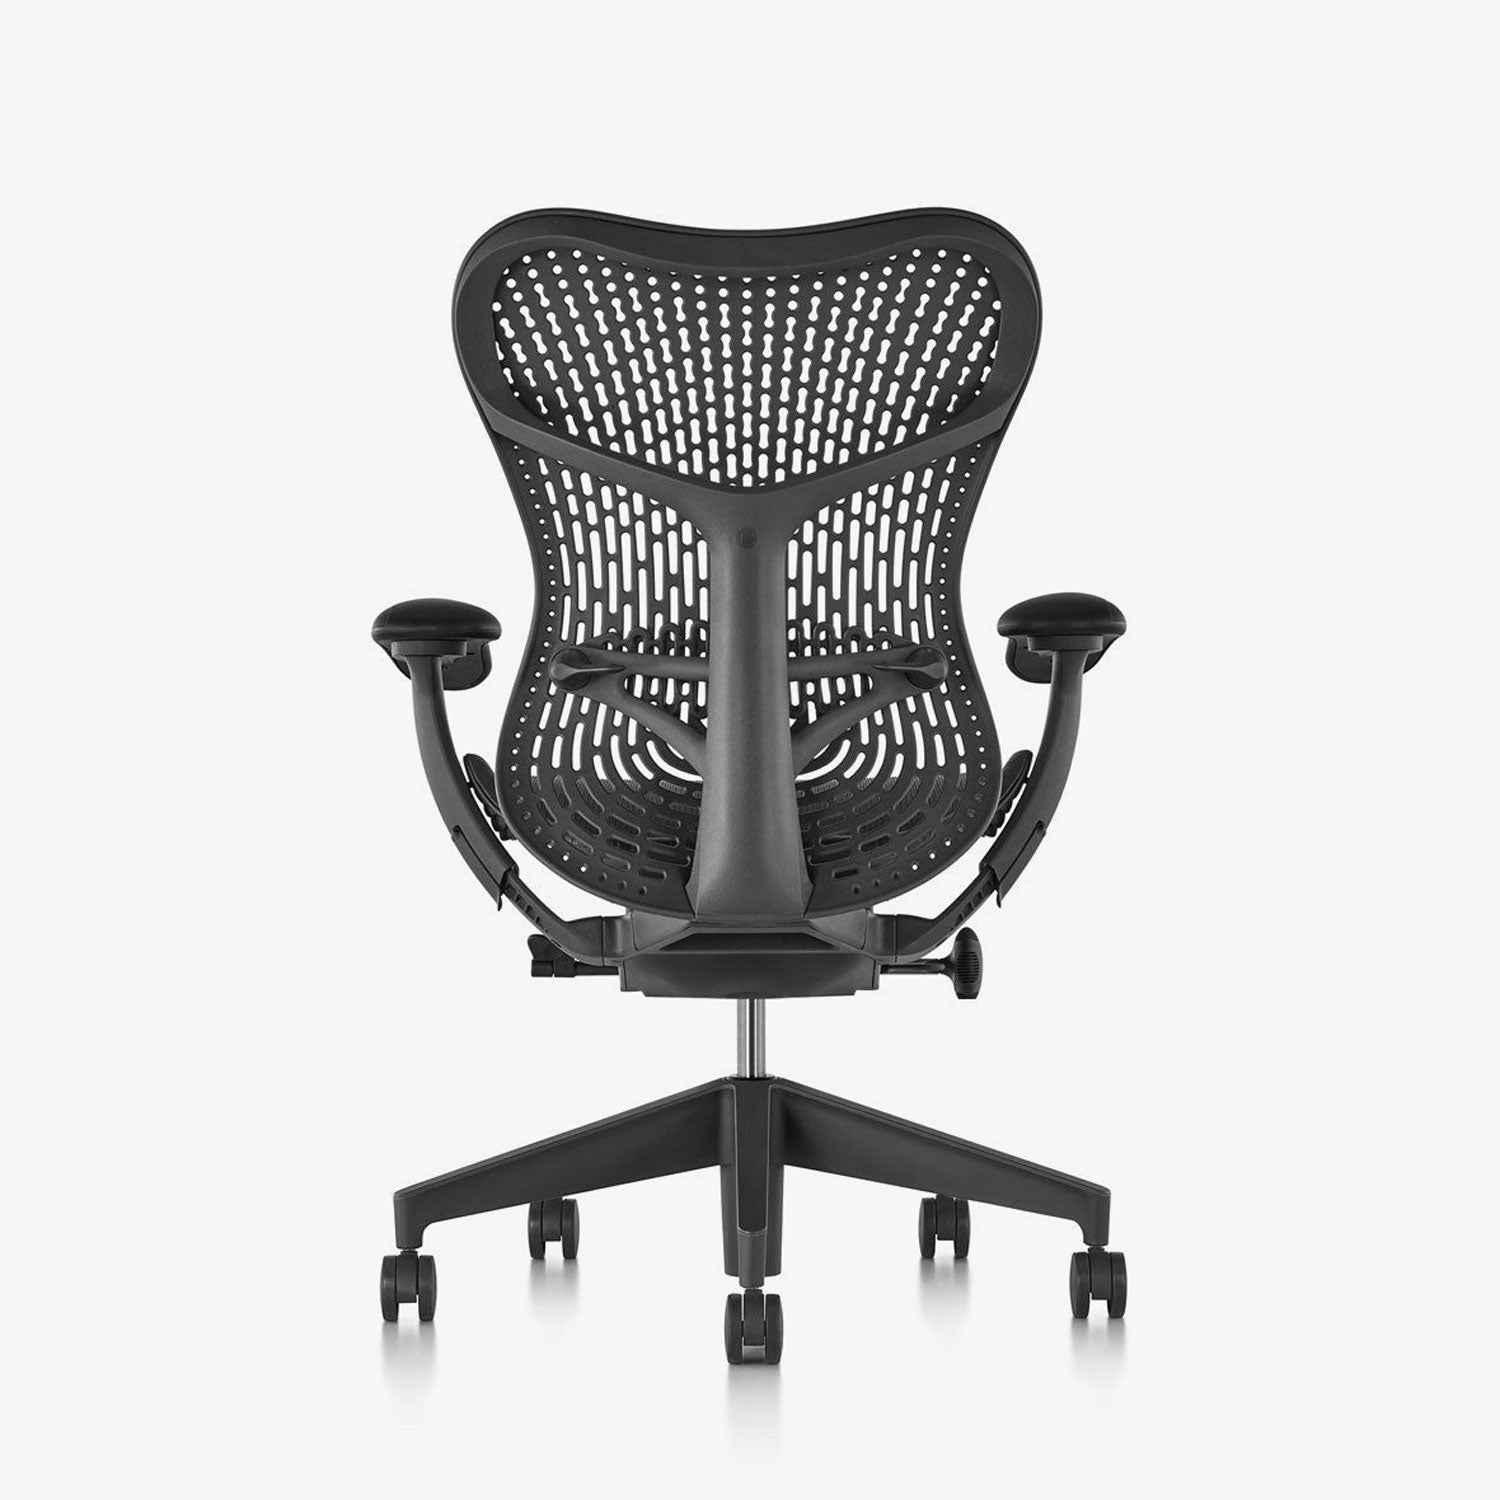 Mirra 2 Triflex Office Chair